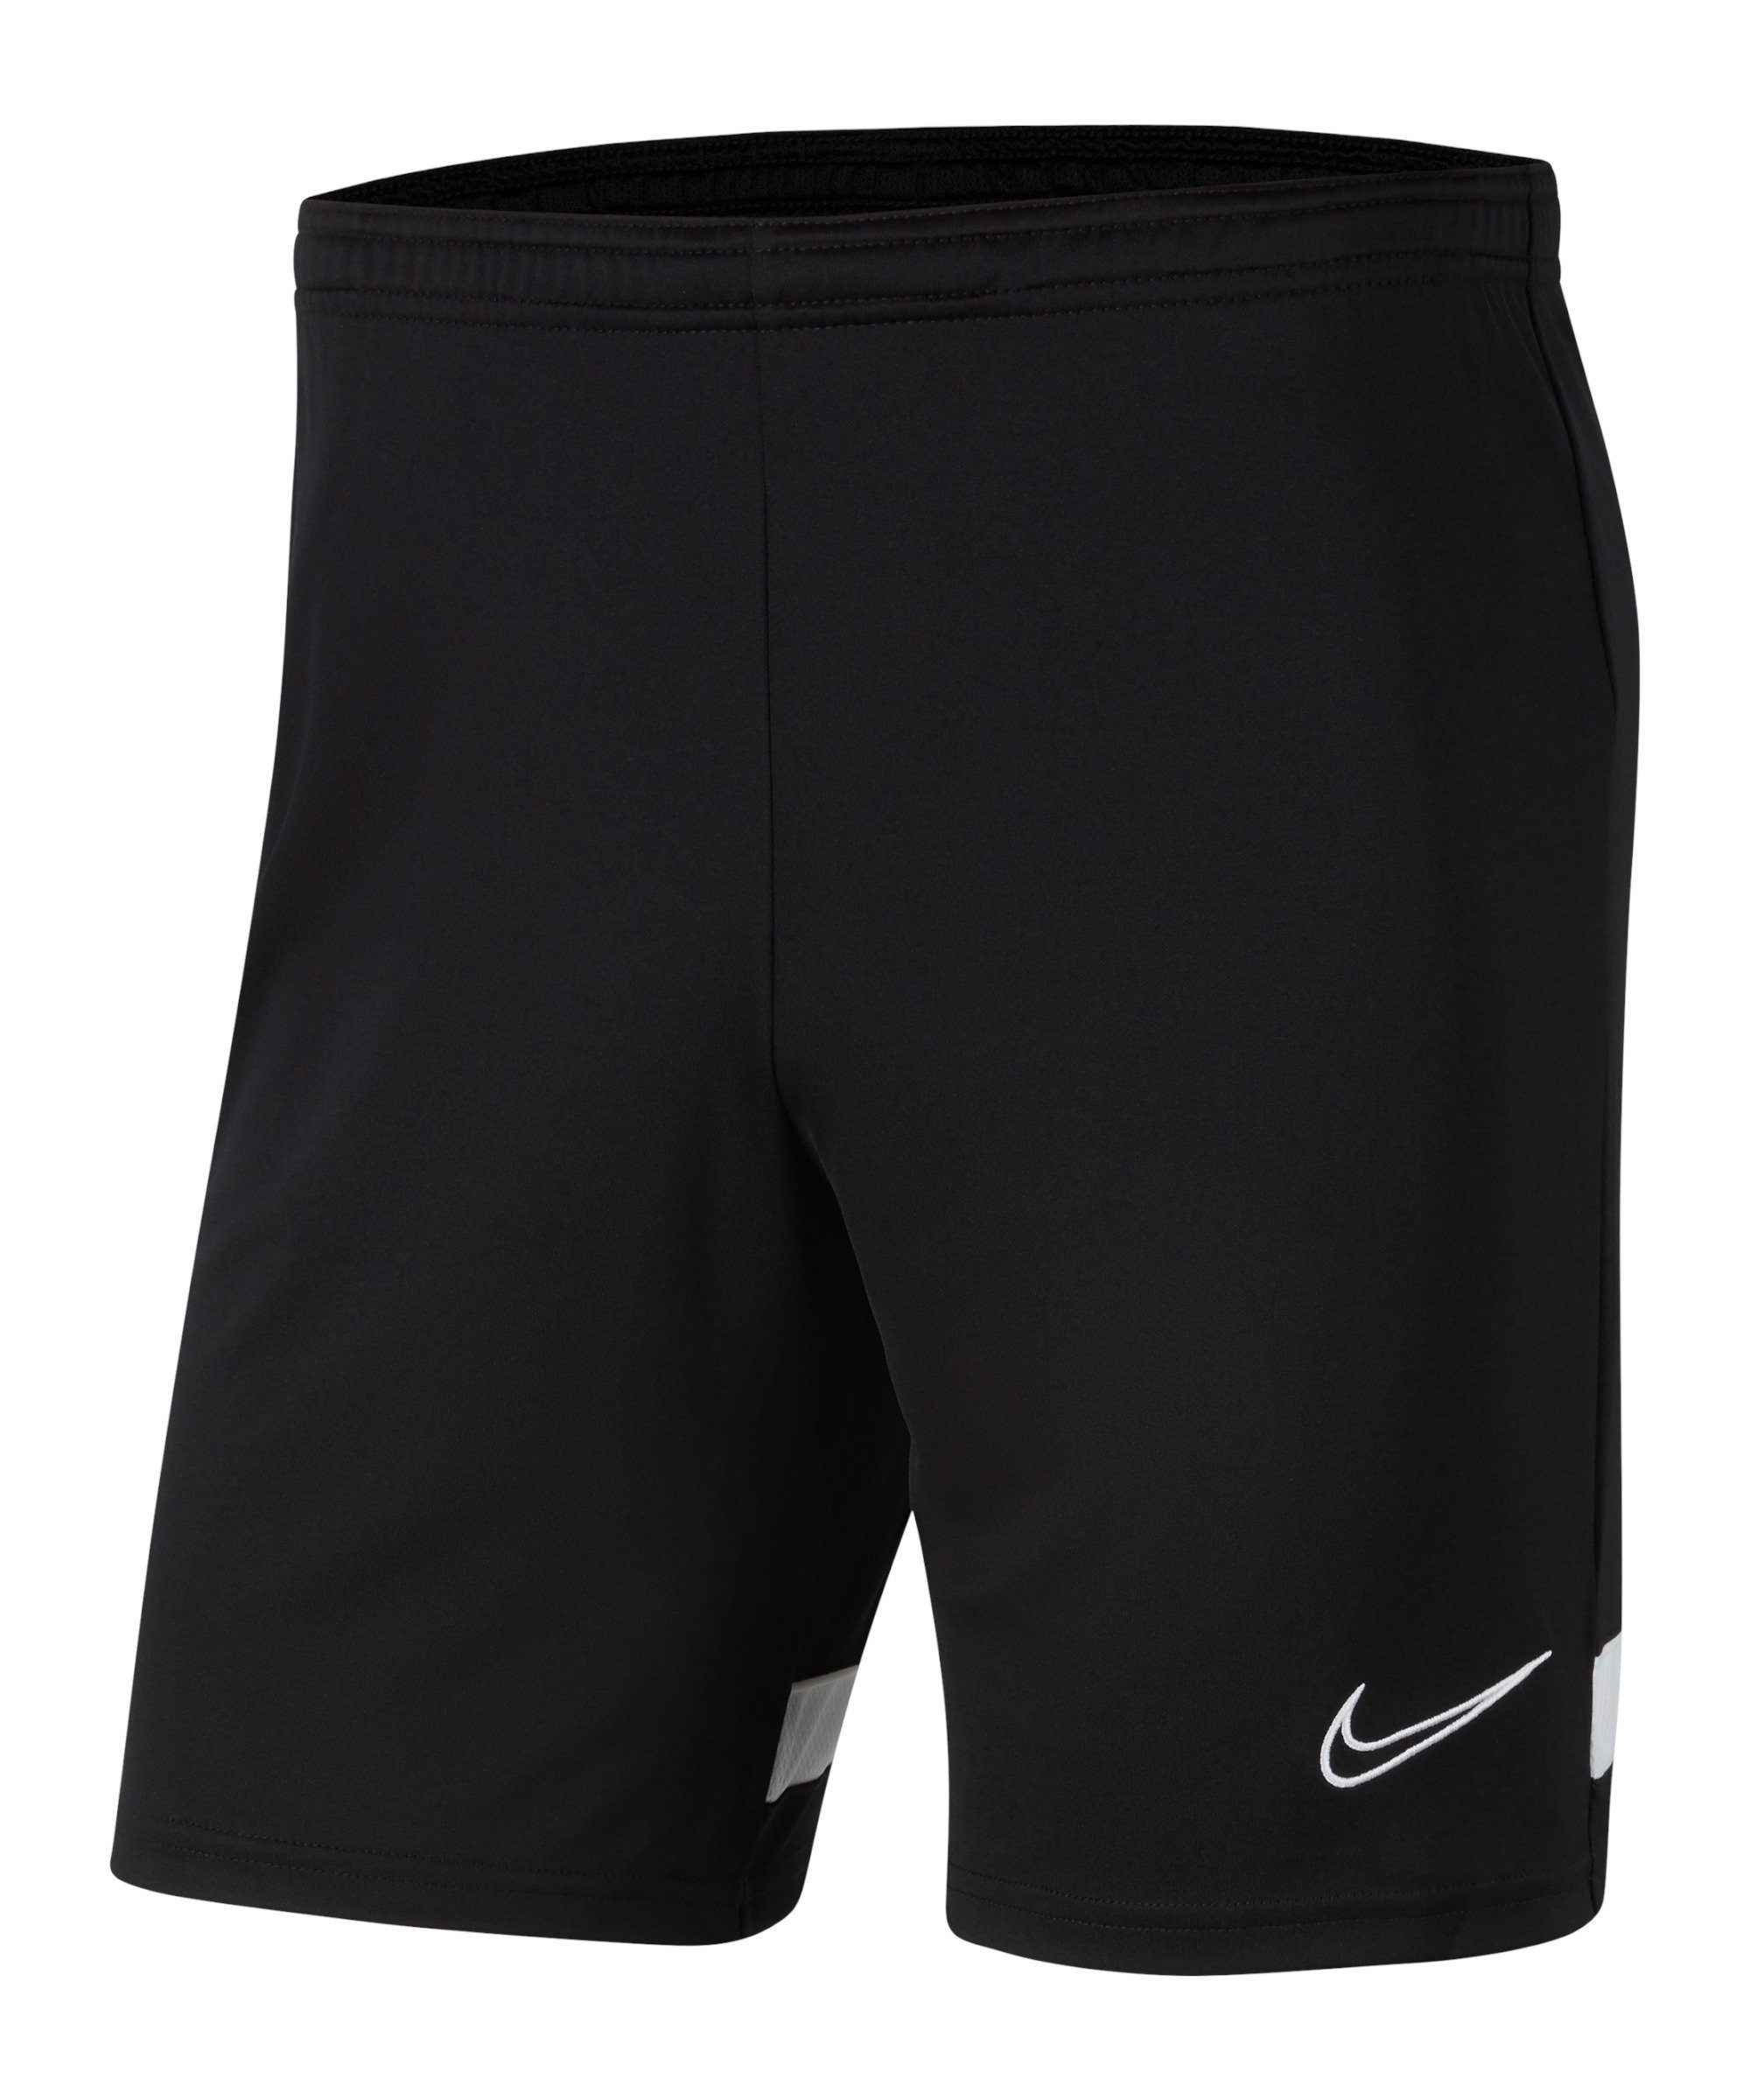 Academy Nike Short 21 schwarzweissweiss Sporthose